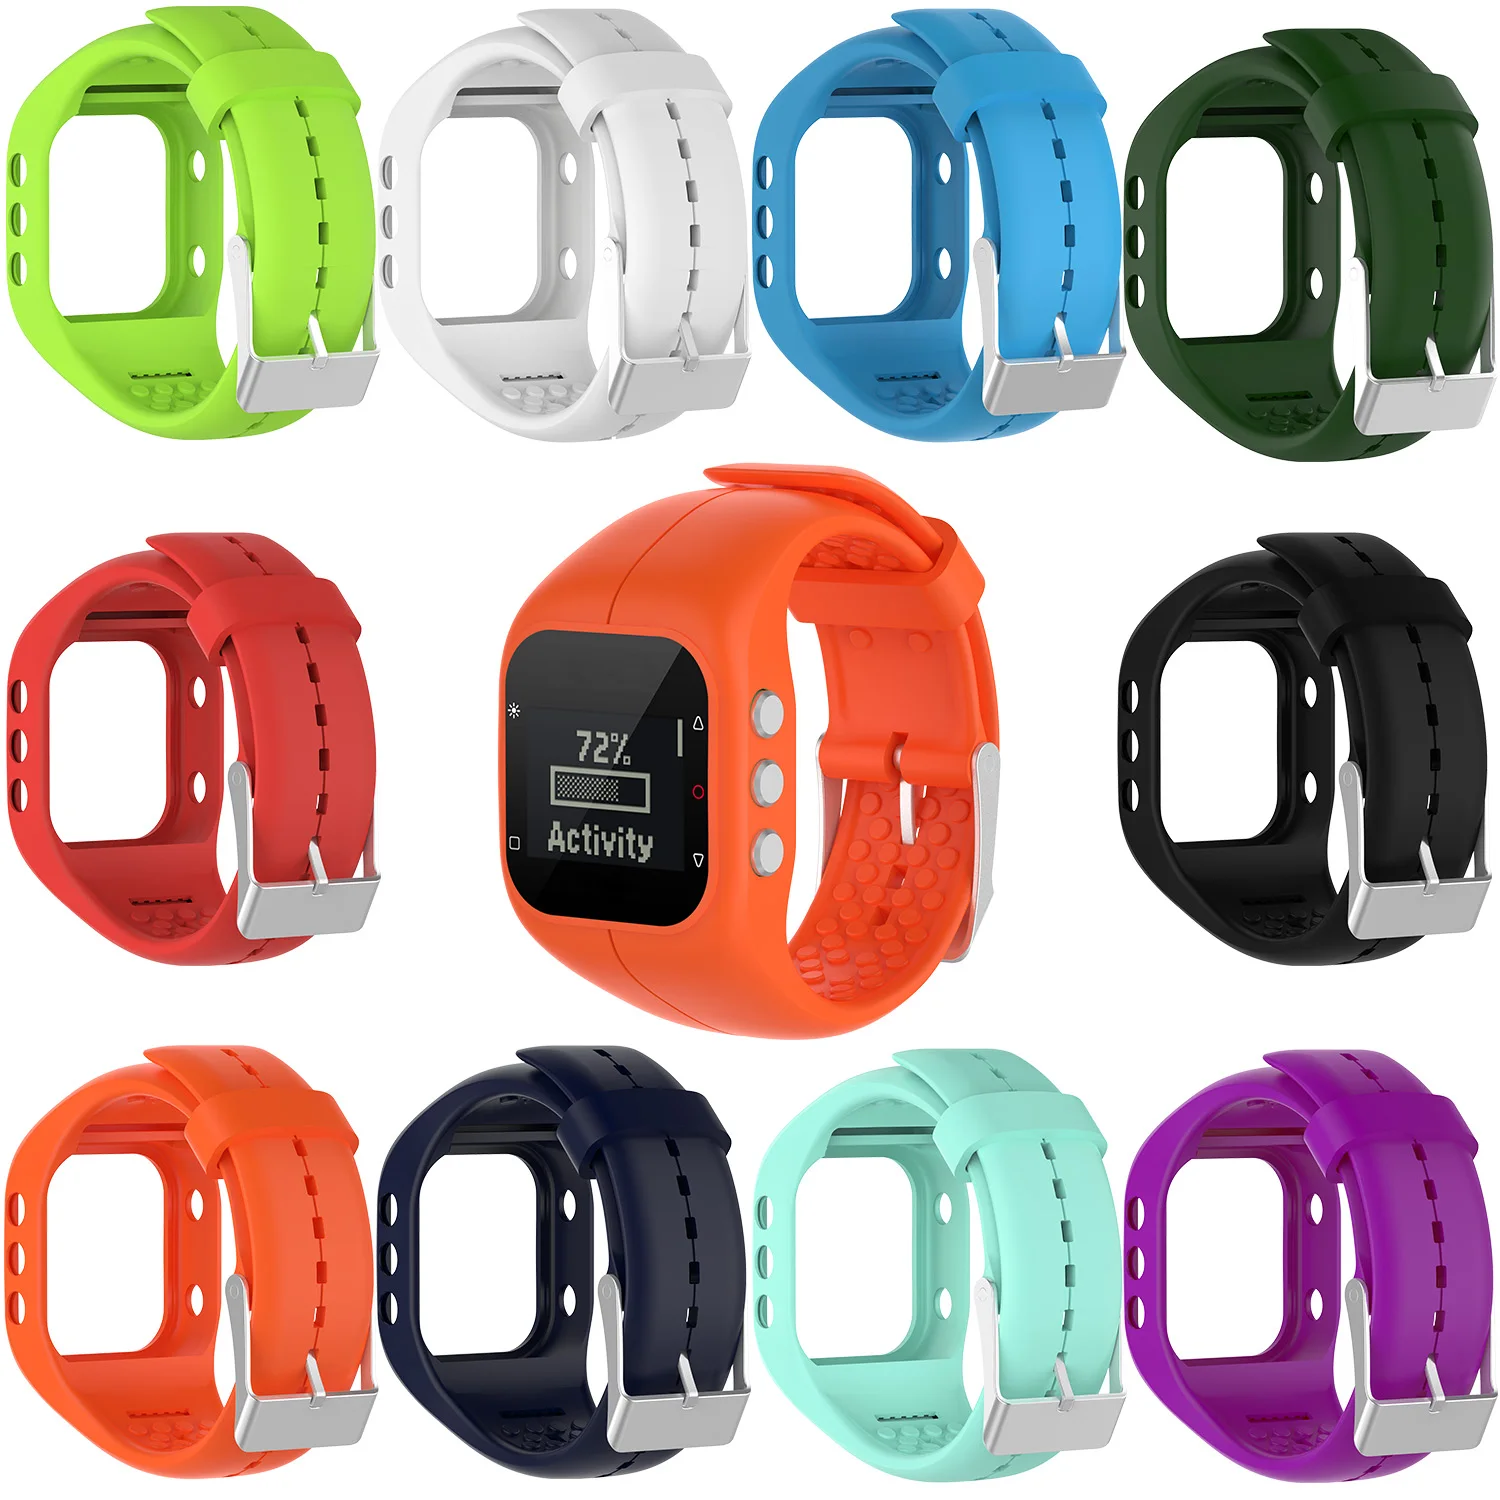 Силиконовые для фитнеса сменный ремешок на запястье для Polar A300 аксессуары для умных часов фитнес-часы спортивные часы